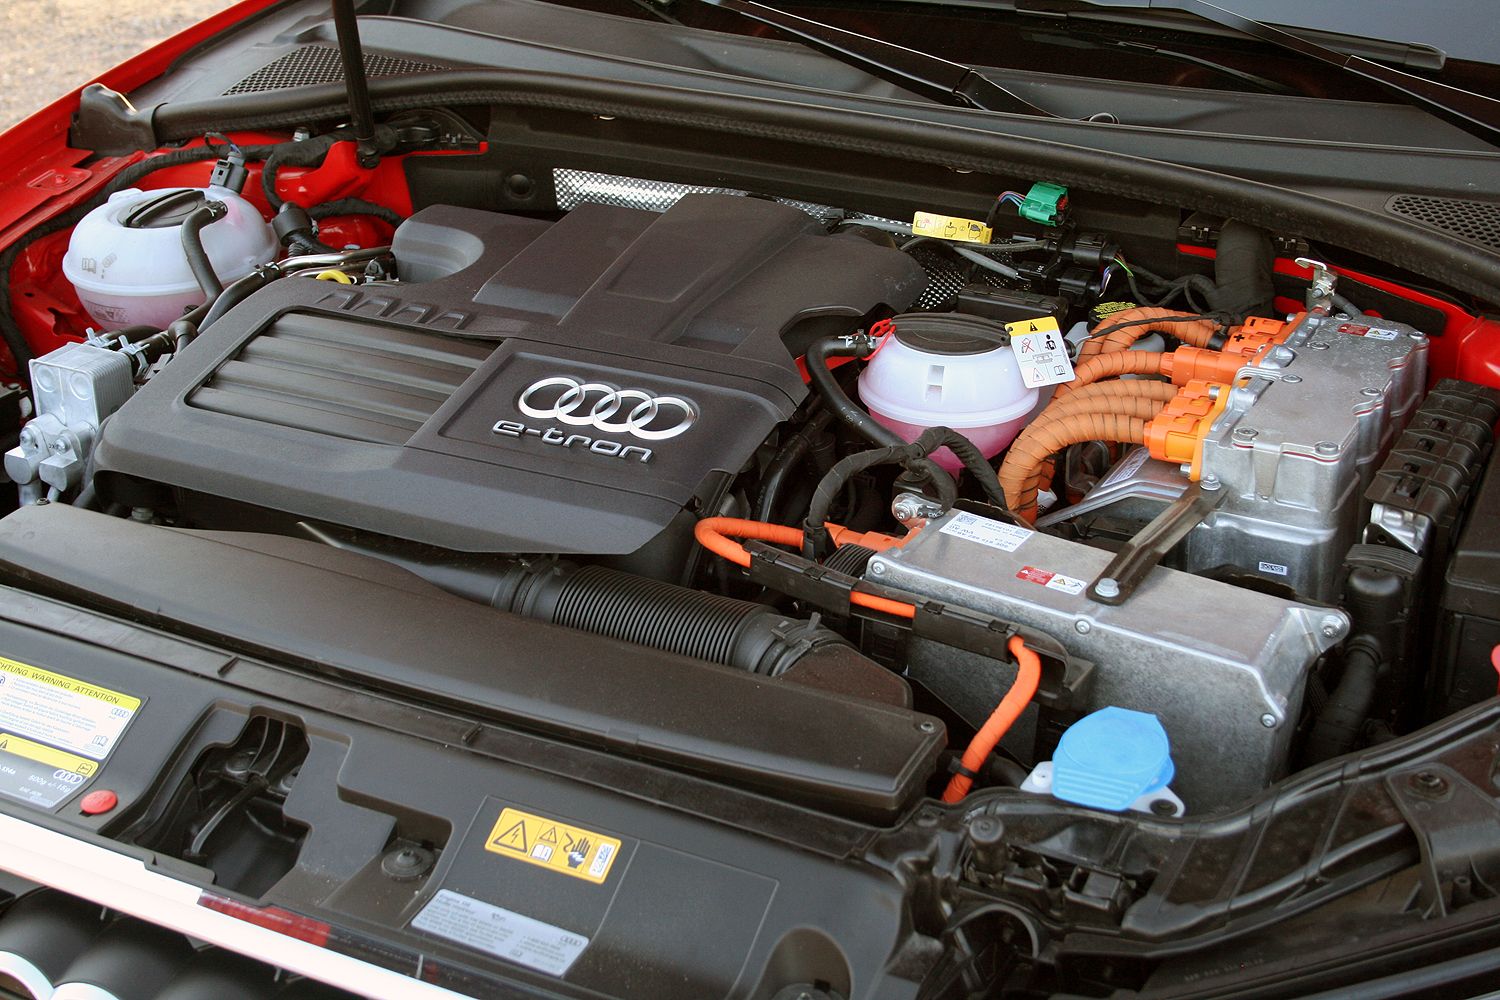 2016 Audi A3 e-tron – Driven